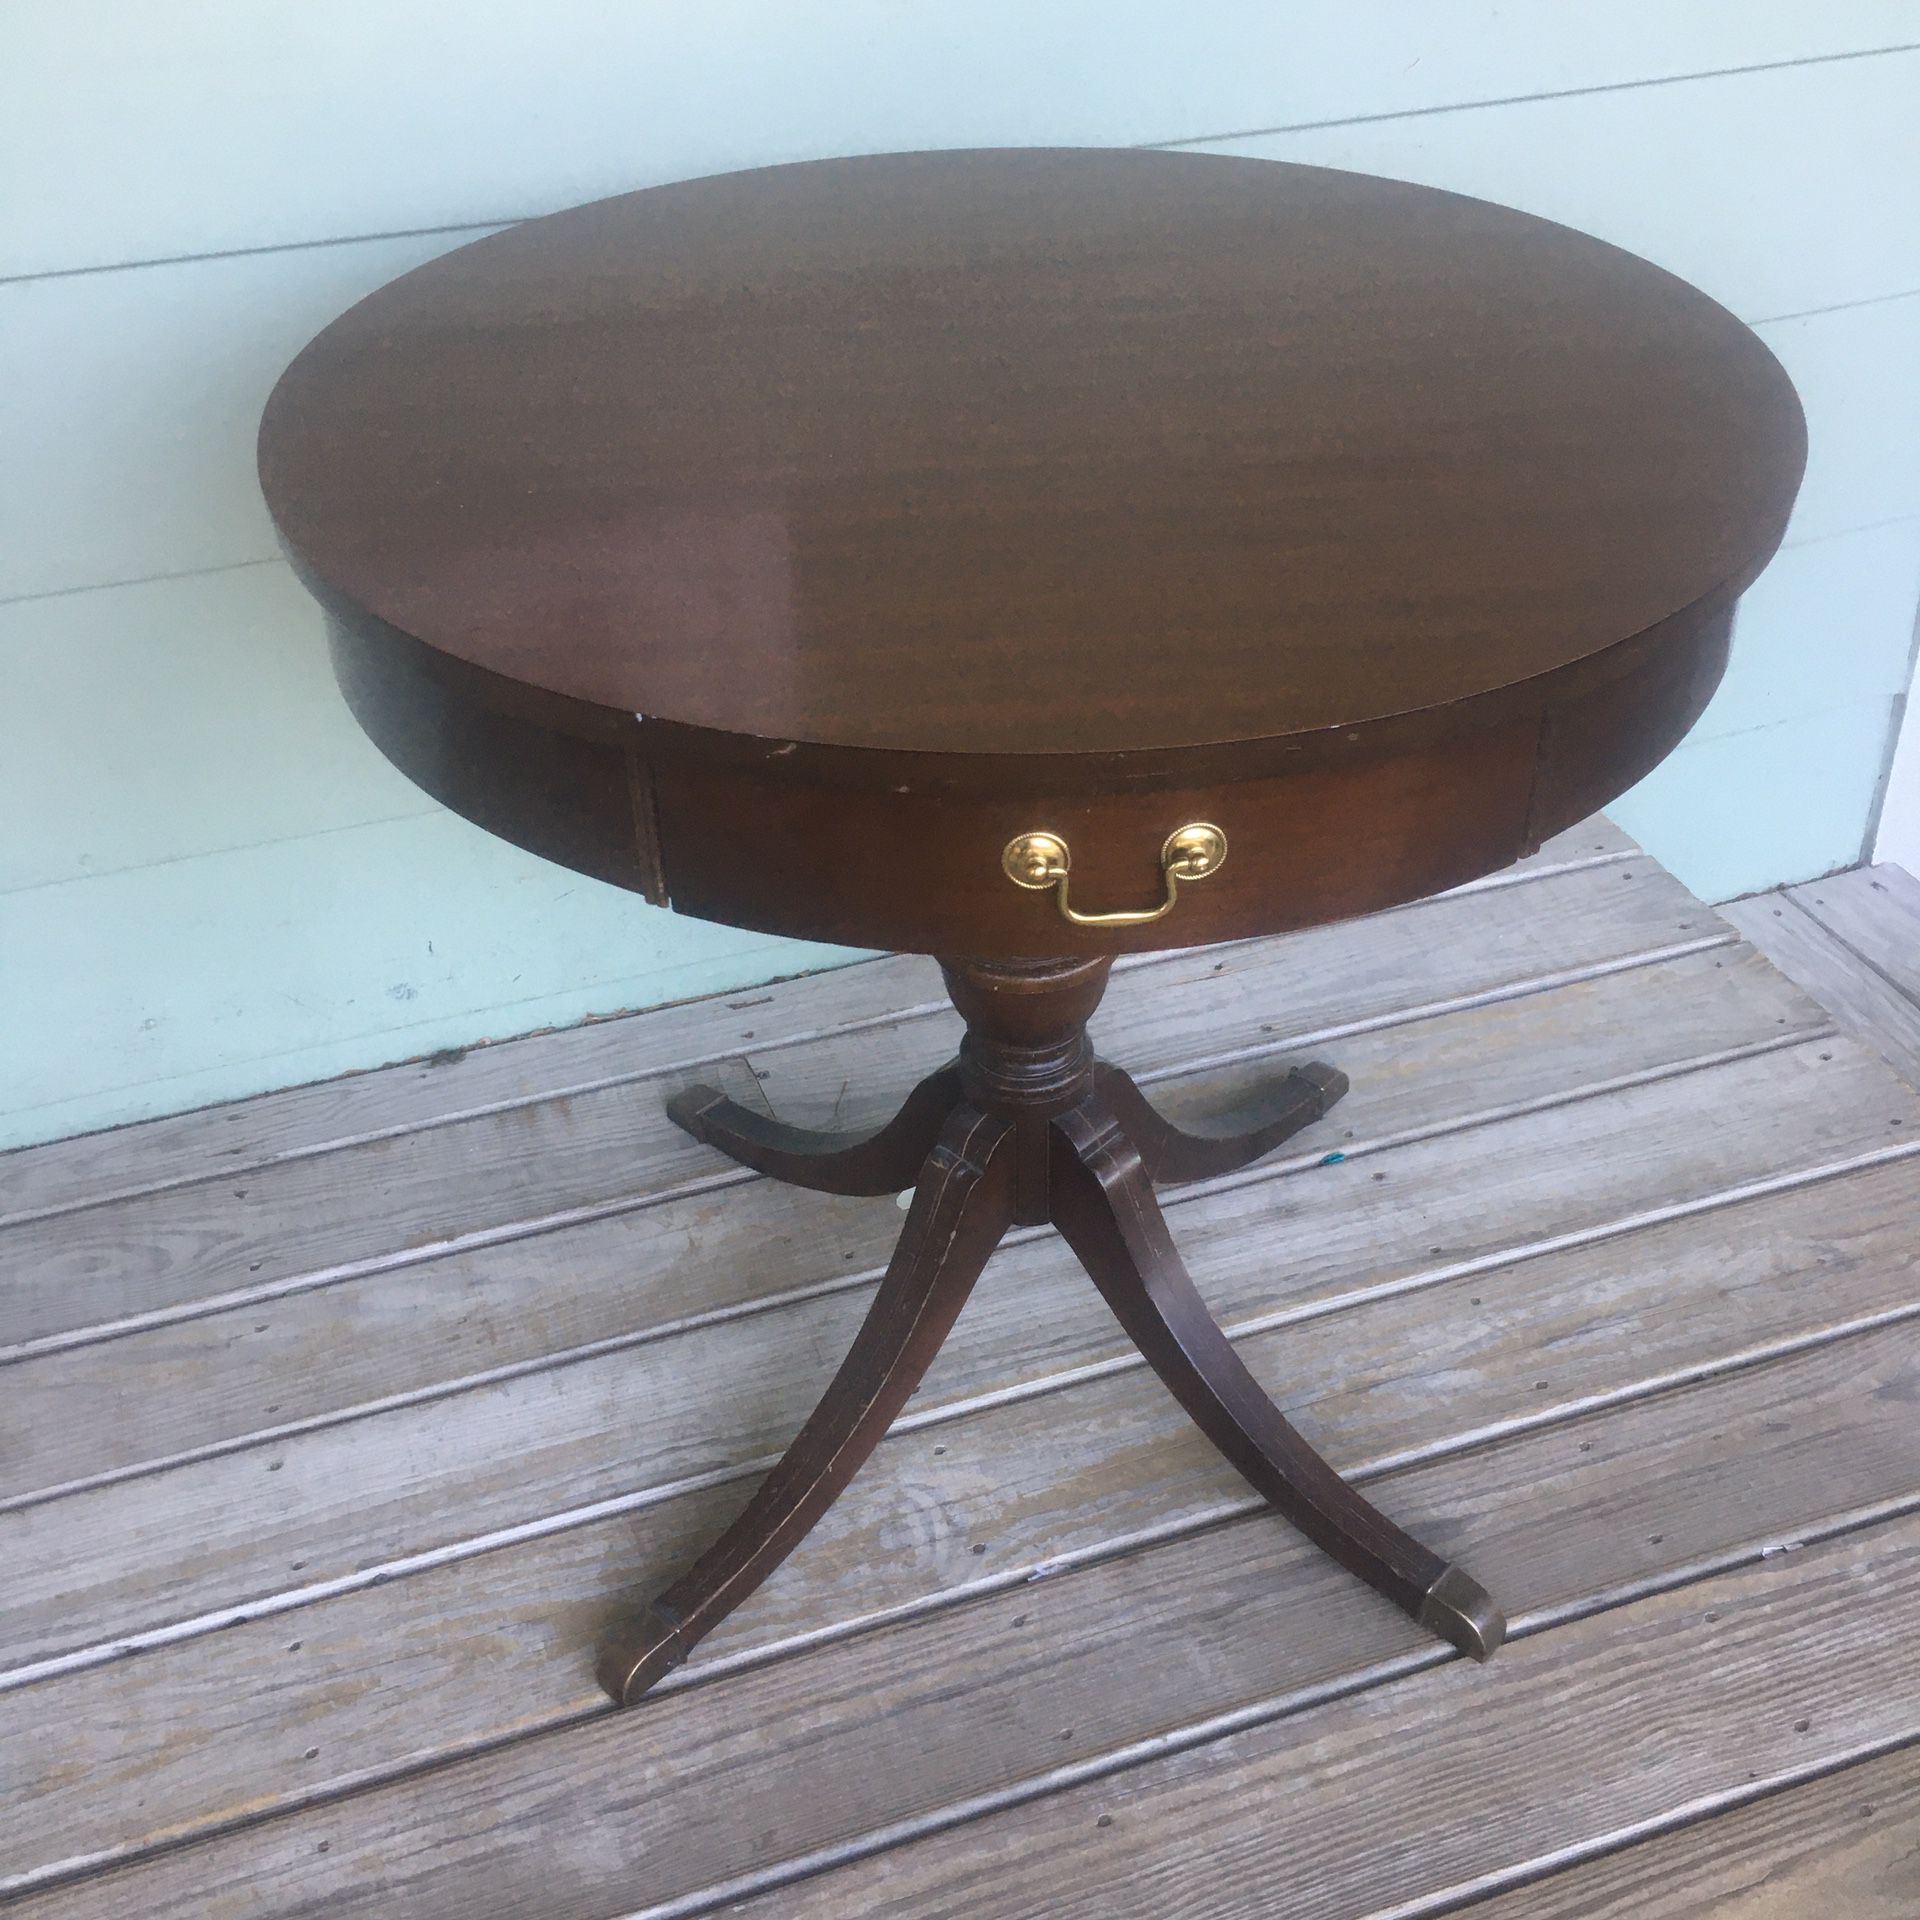 Antique Mersman drum table 24” diameter